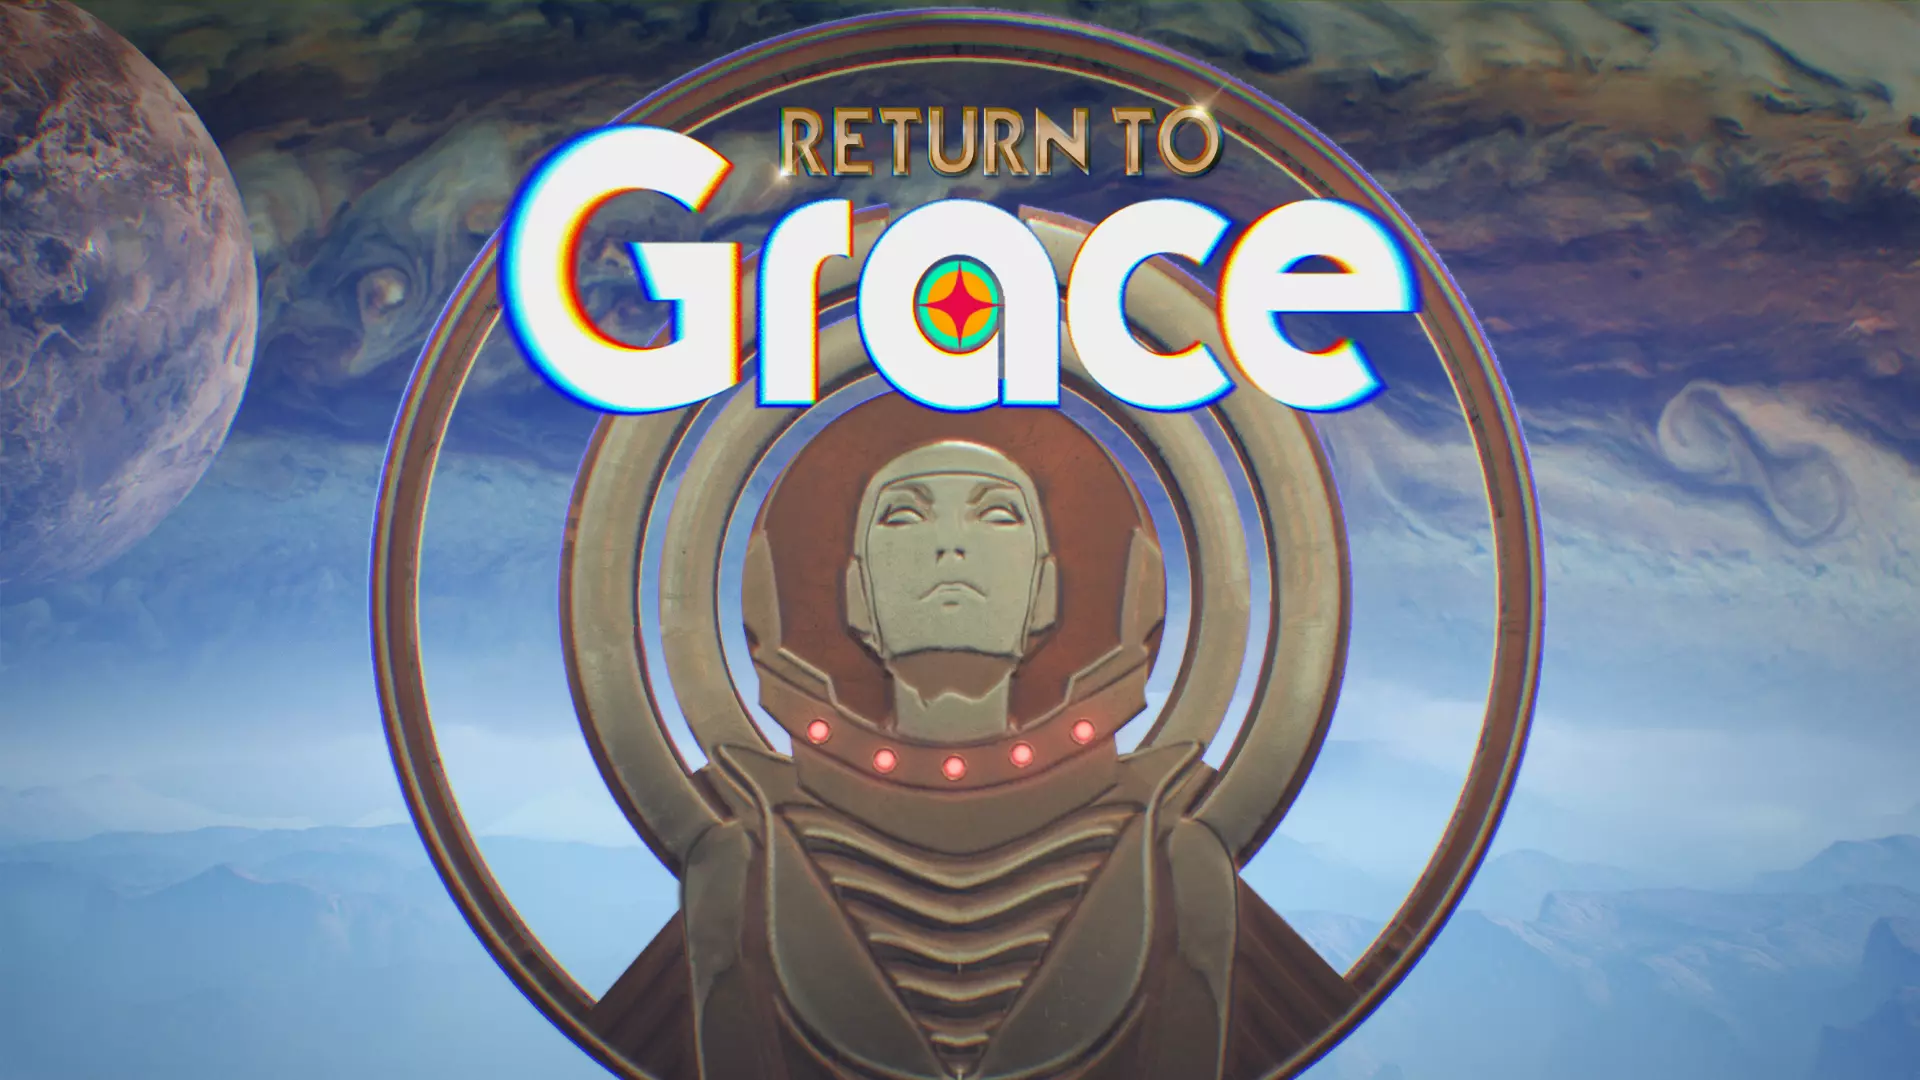 Return To Grace arribarà a PC el 30 de maig